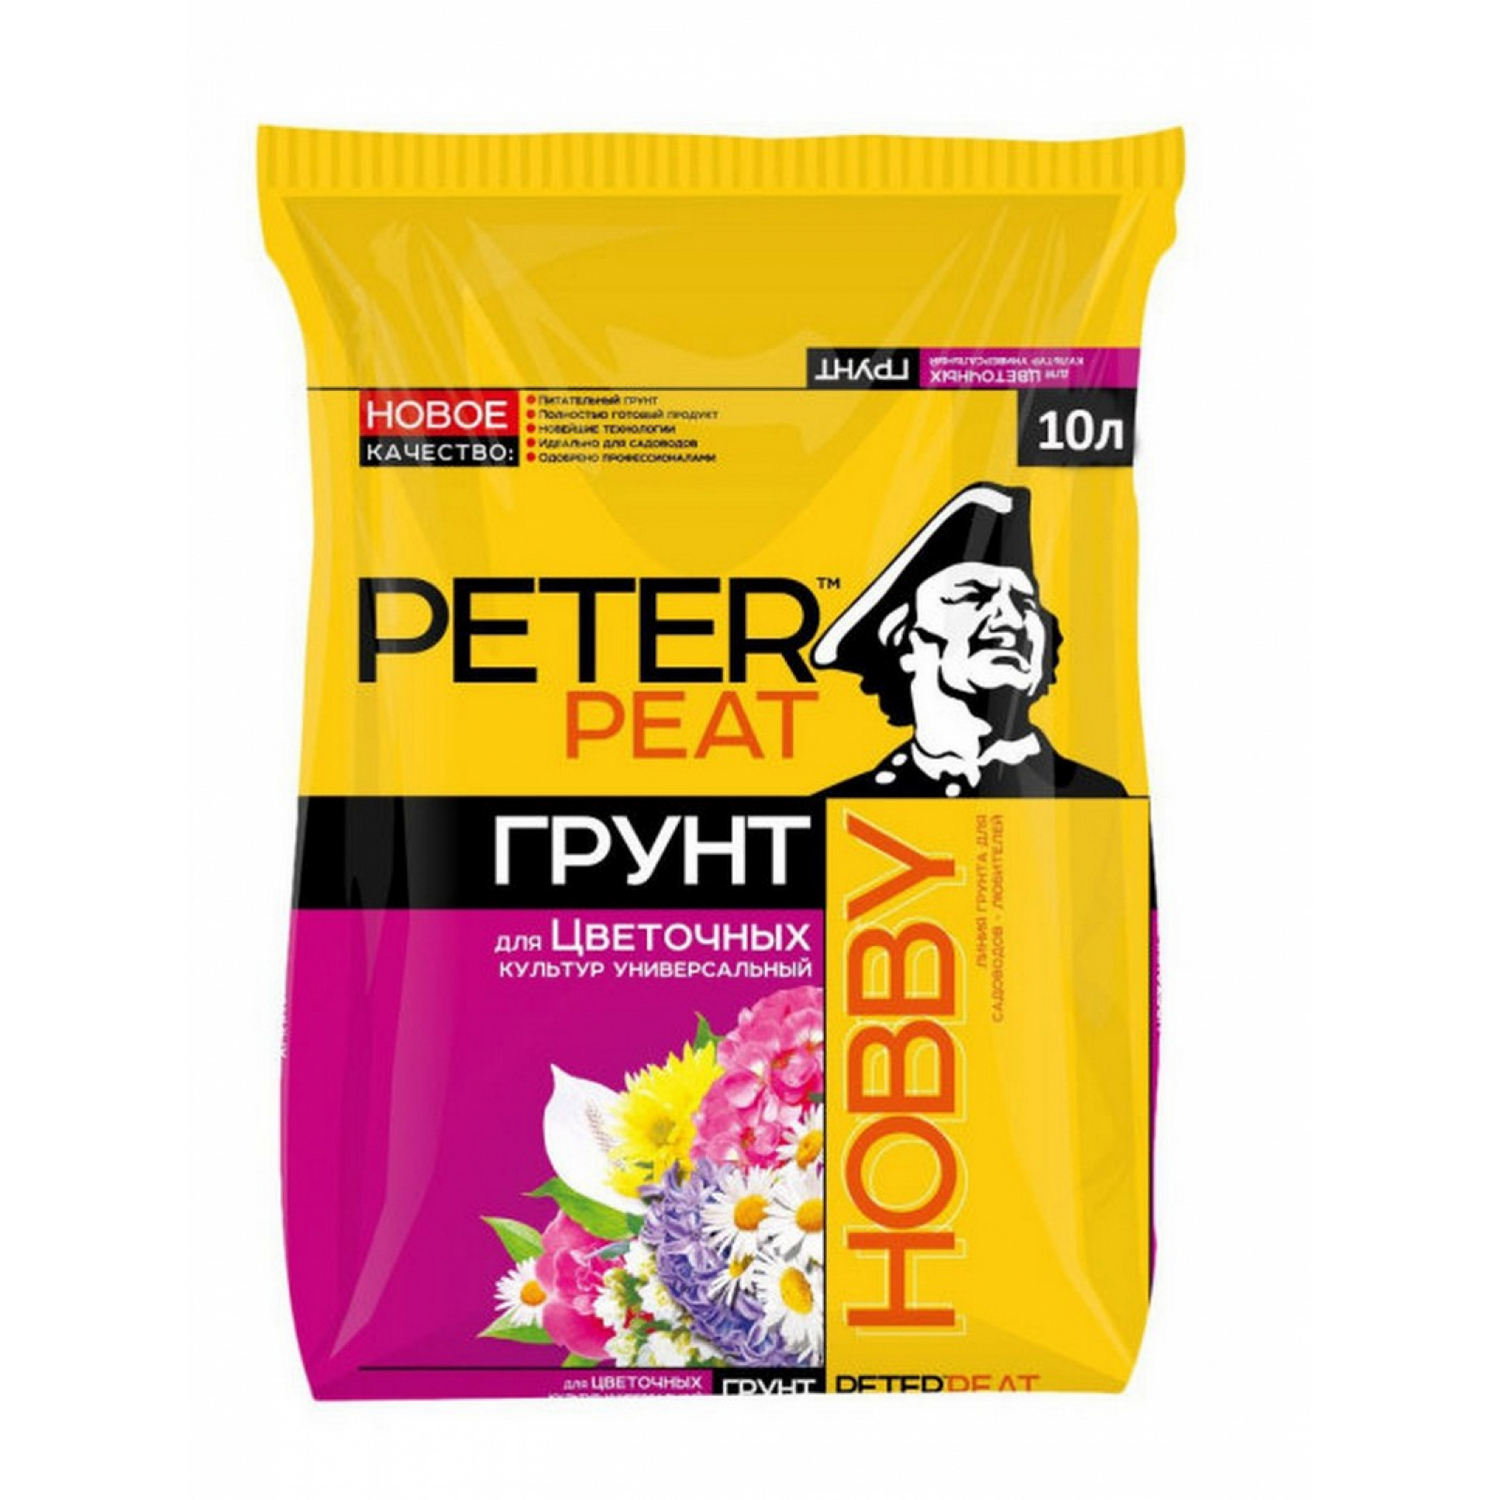 Грунт PETER PEAT Для цветочных культур универсальный линия Хобби 10л - фото 1